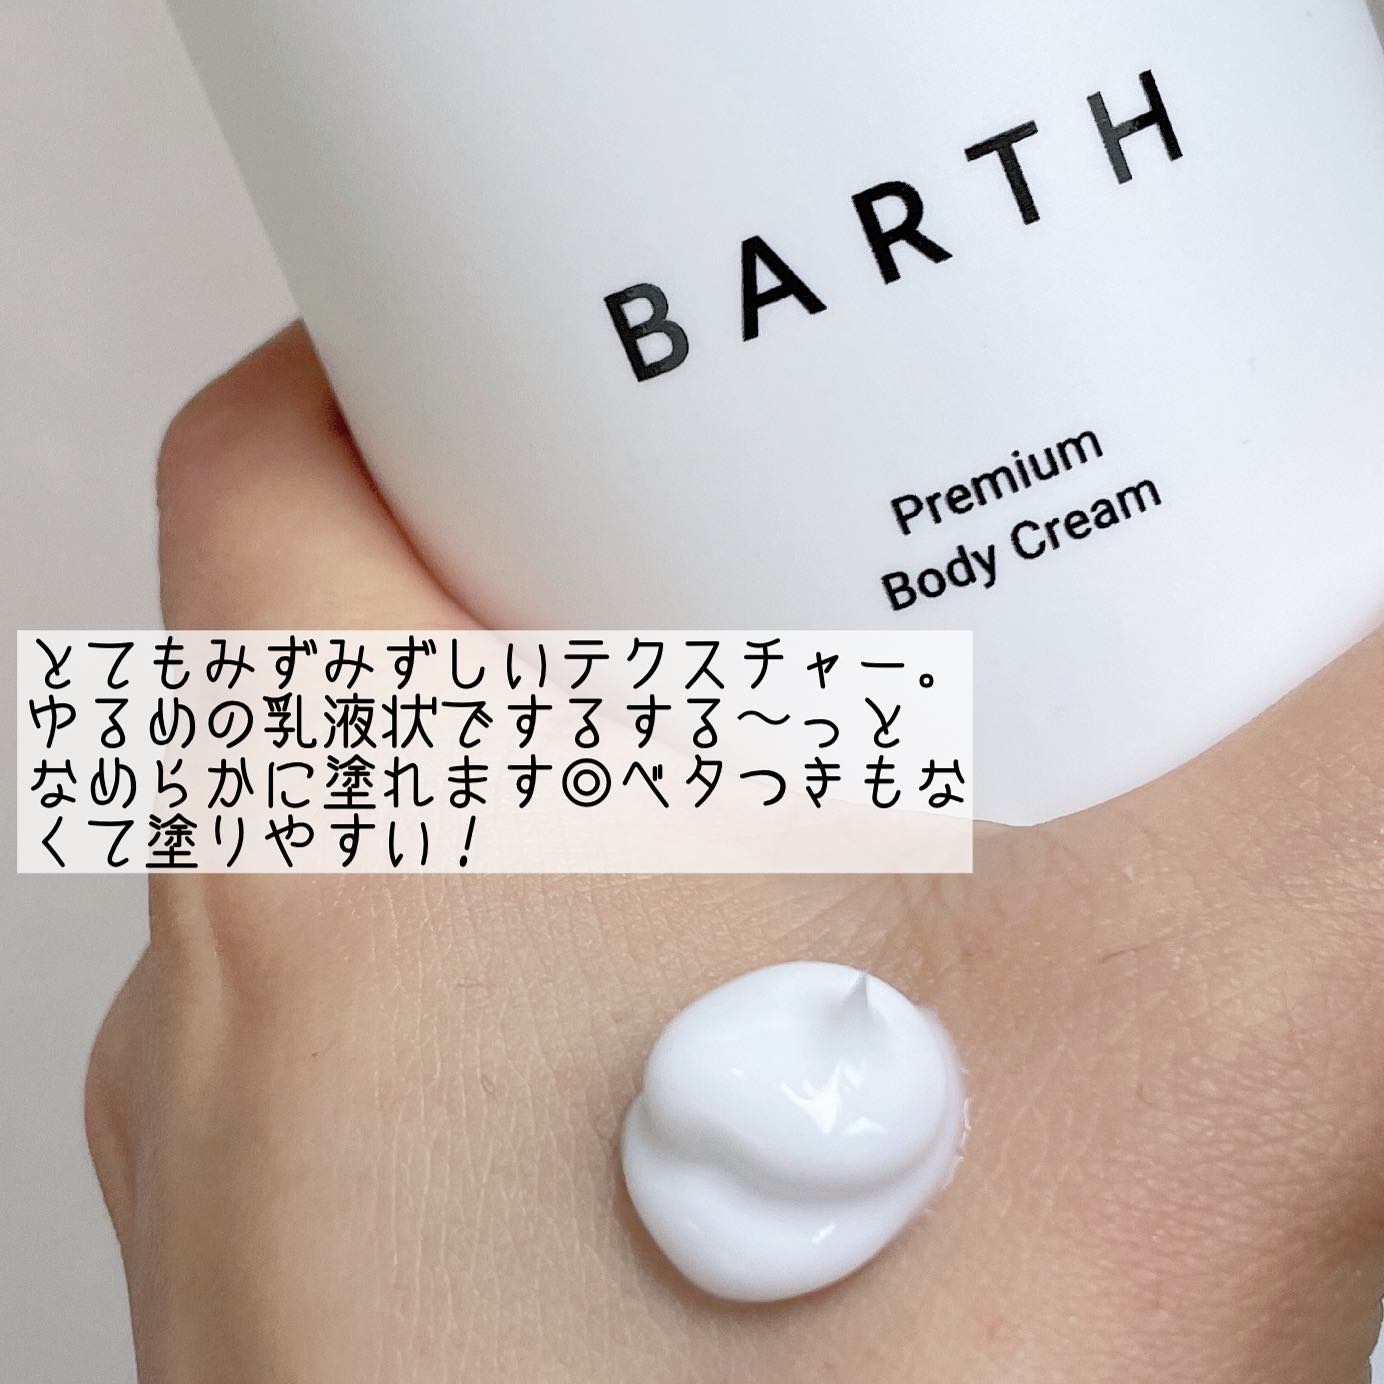 BARTH(バース) プレミアムボディクリーム at bath timeの良い点・メリットに関するなゆさんの口コミ画像1